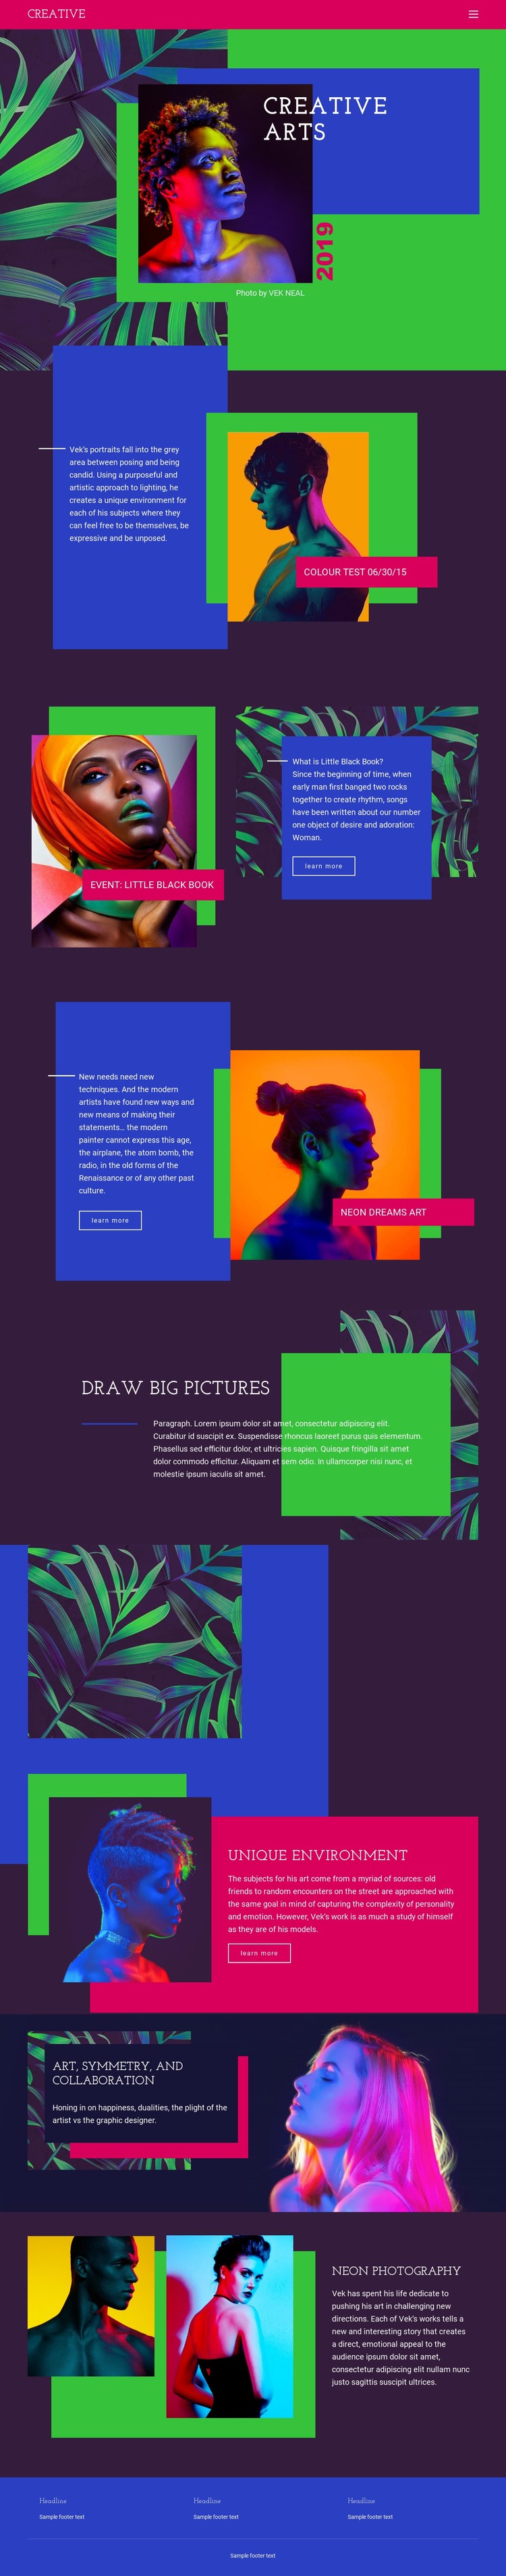 Creative Art Ideas CSS Template